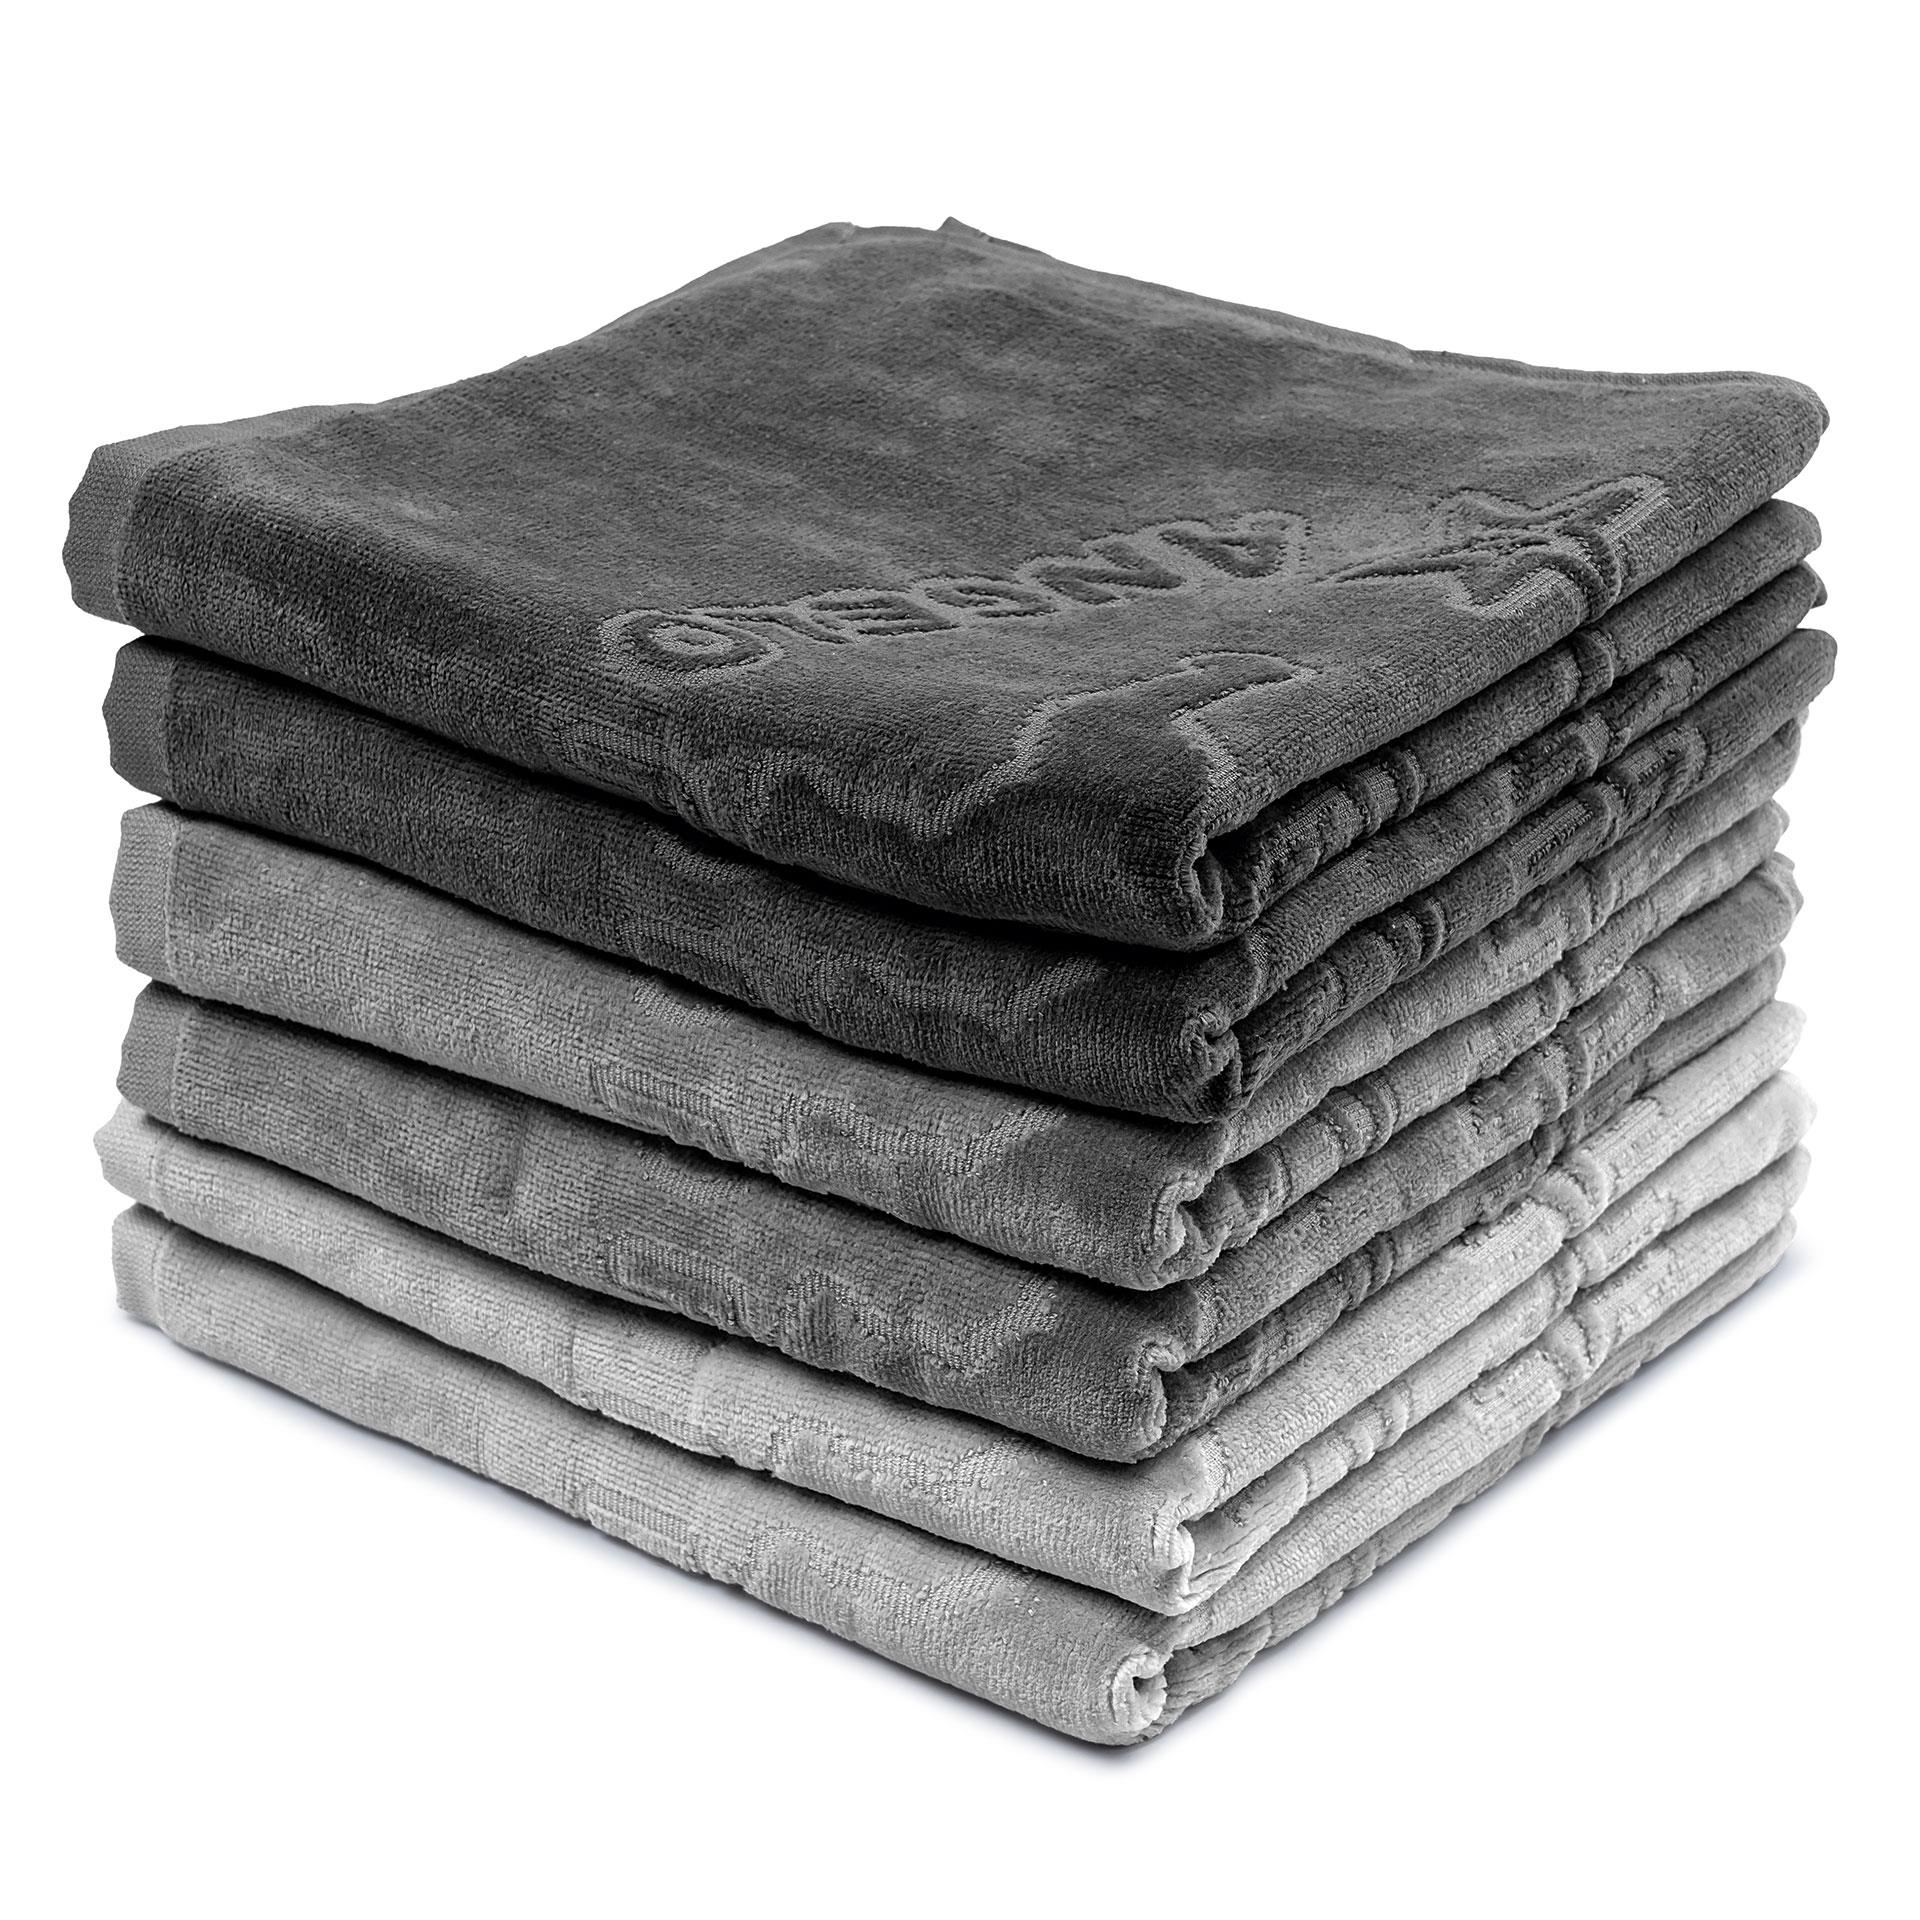 6 asciugamani di spugna, Grey Art